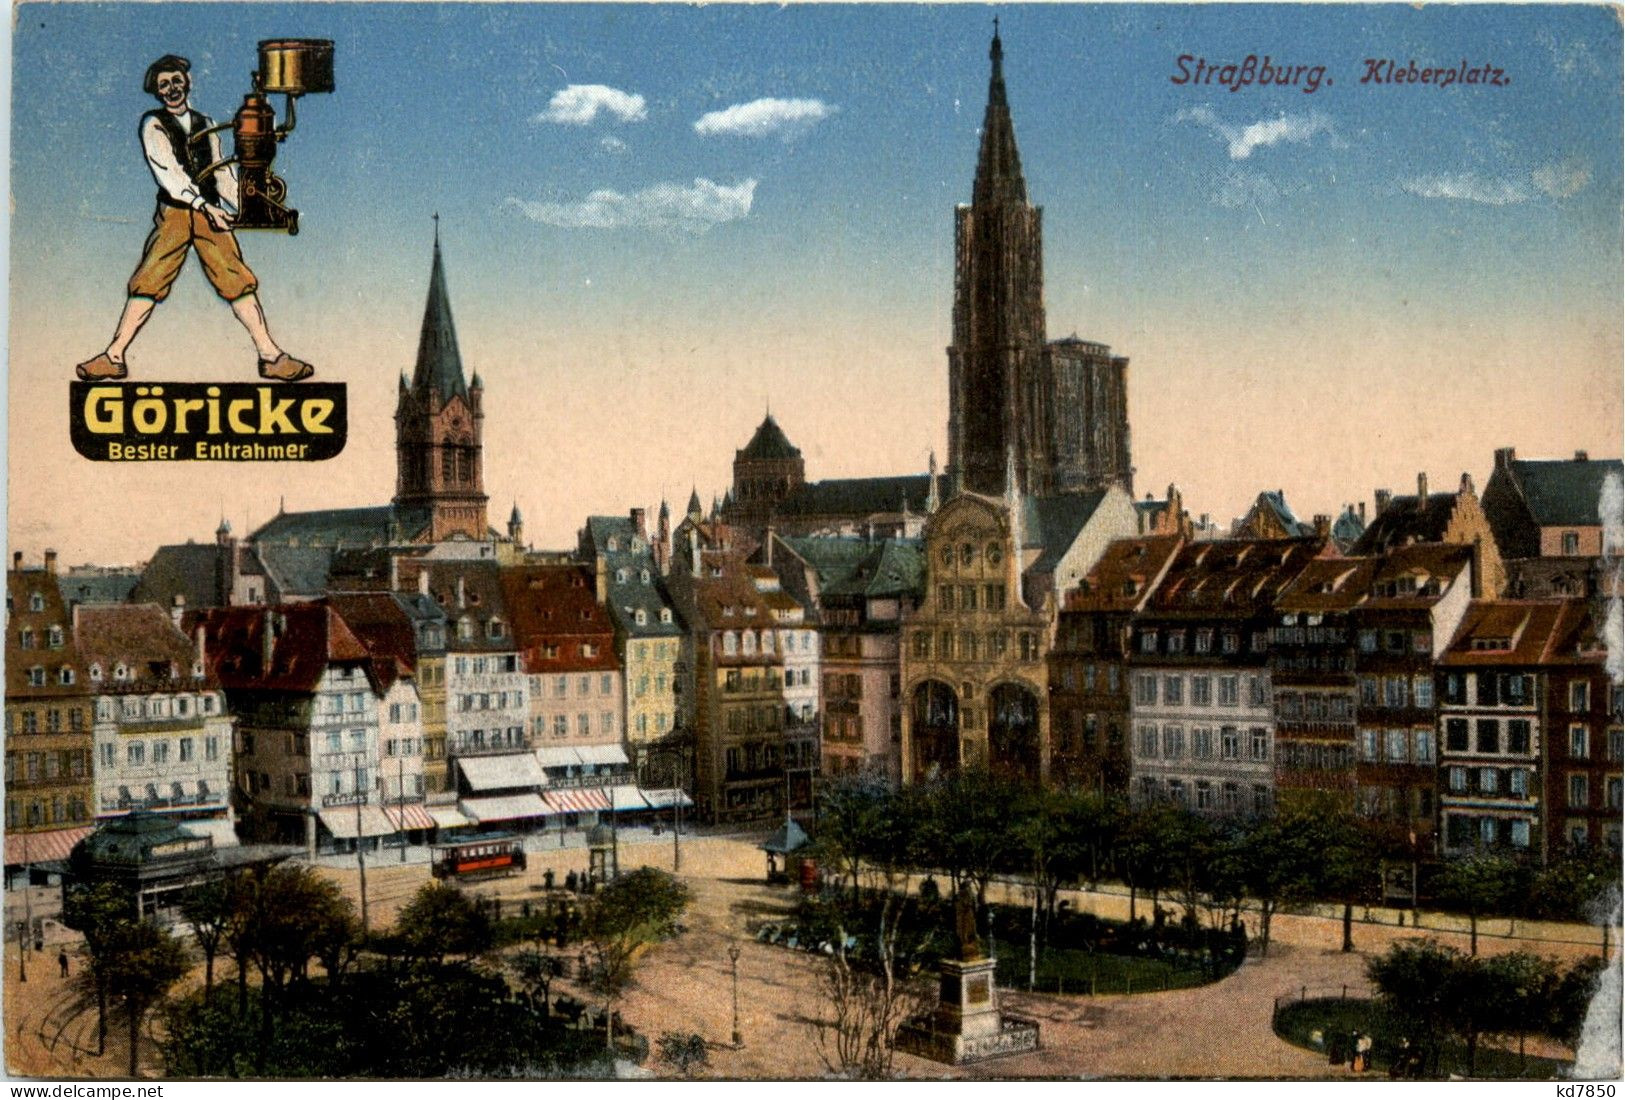 Strassbuerg - Kleberplatz - Strasbourg